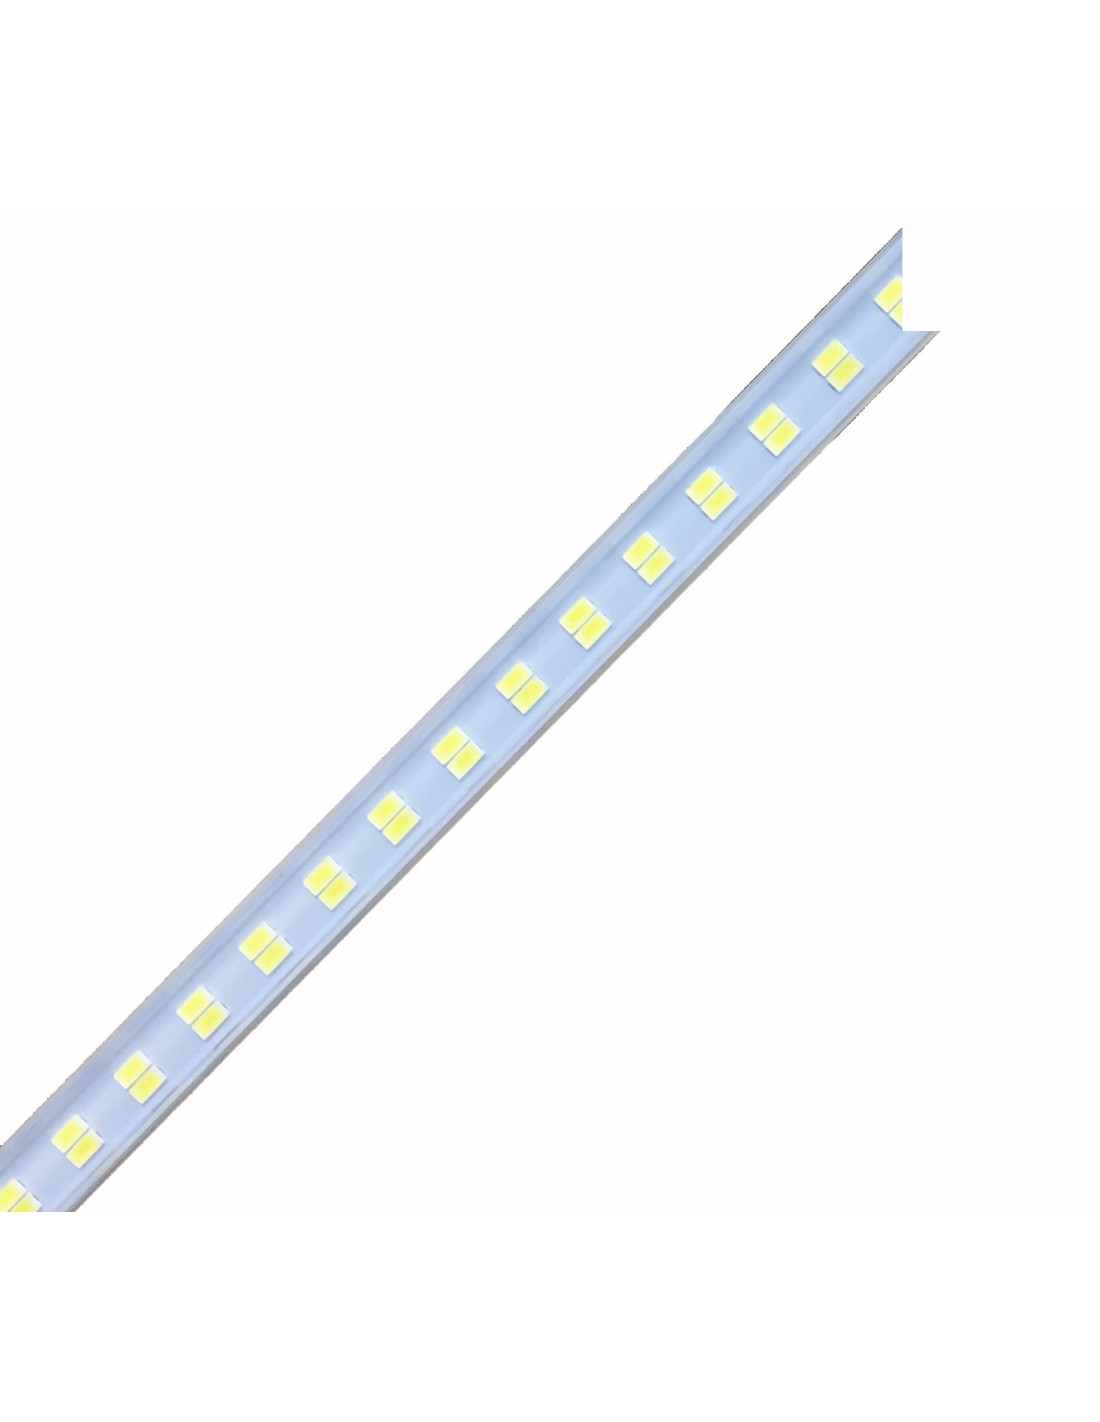 Iluminación LED -Para mod. FESTIVAL-10 - disponible sólo con el plan de servicio de plexiglass